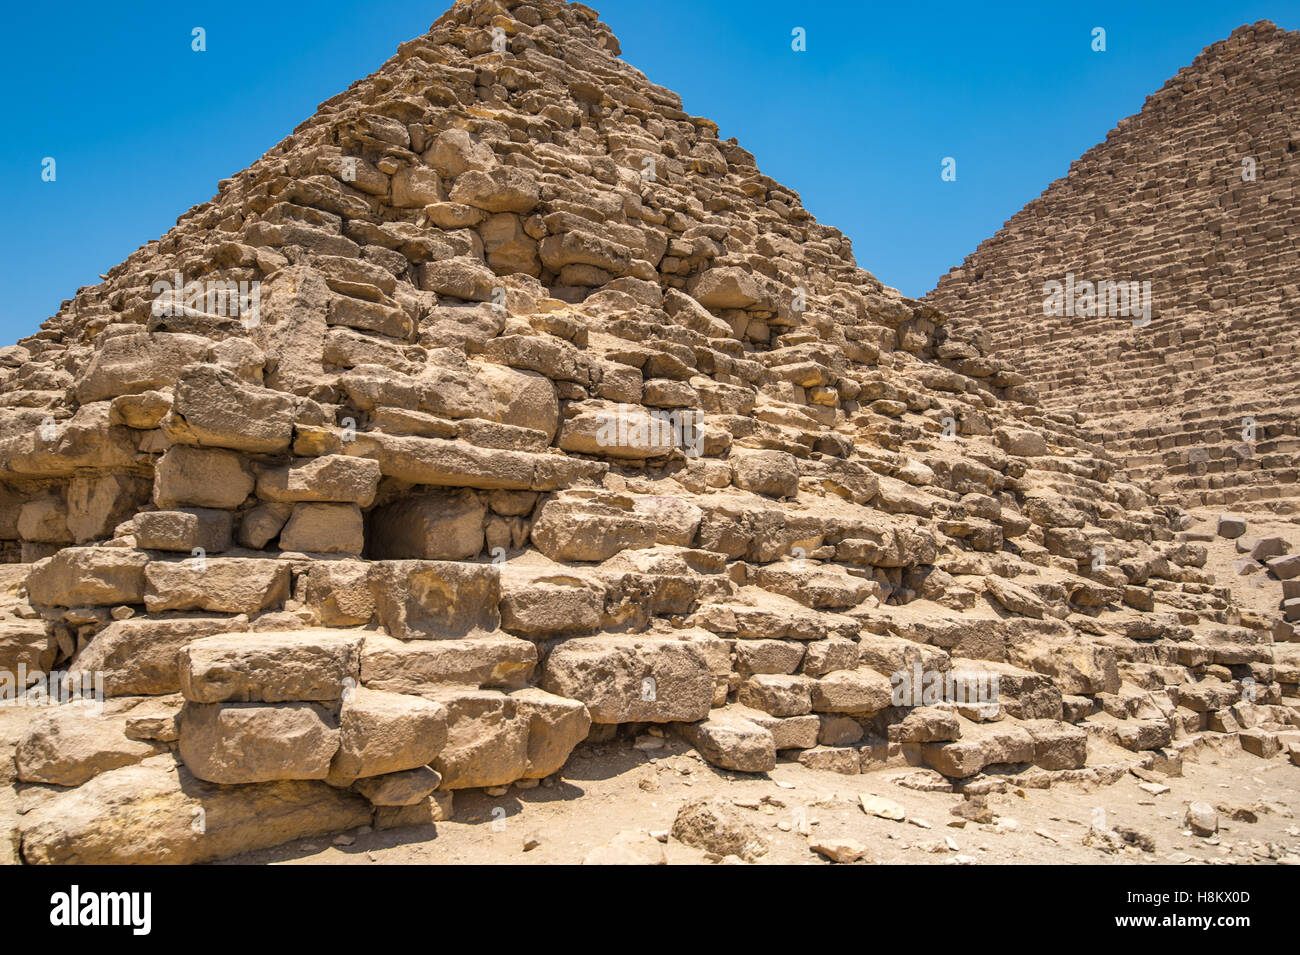 Le Caire, Égypte près d'un temple funéraire en face d'une des grandes pyramides de Gizeh contre un ciel bleu clair. Ce particulier Banque D'Images